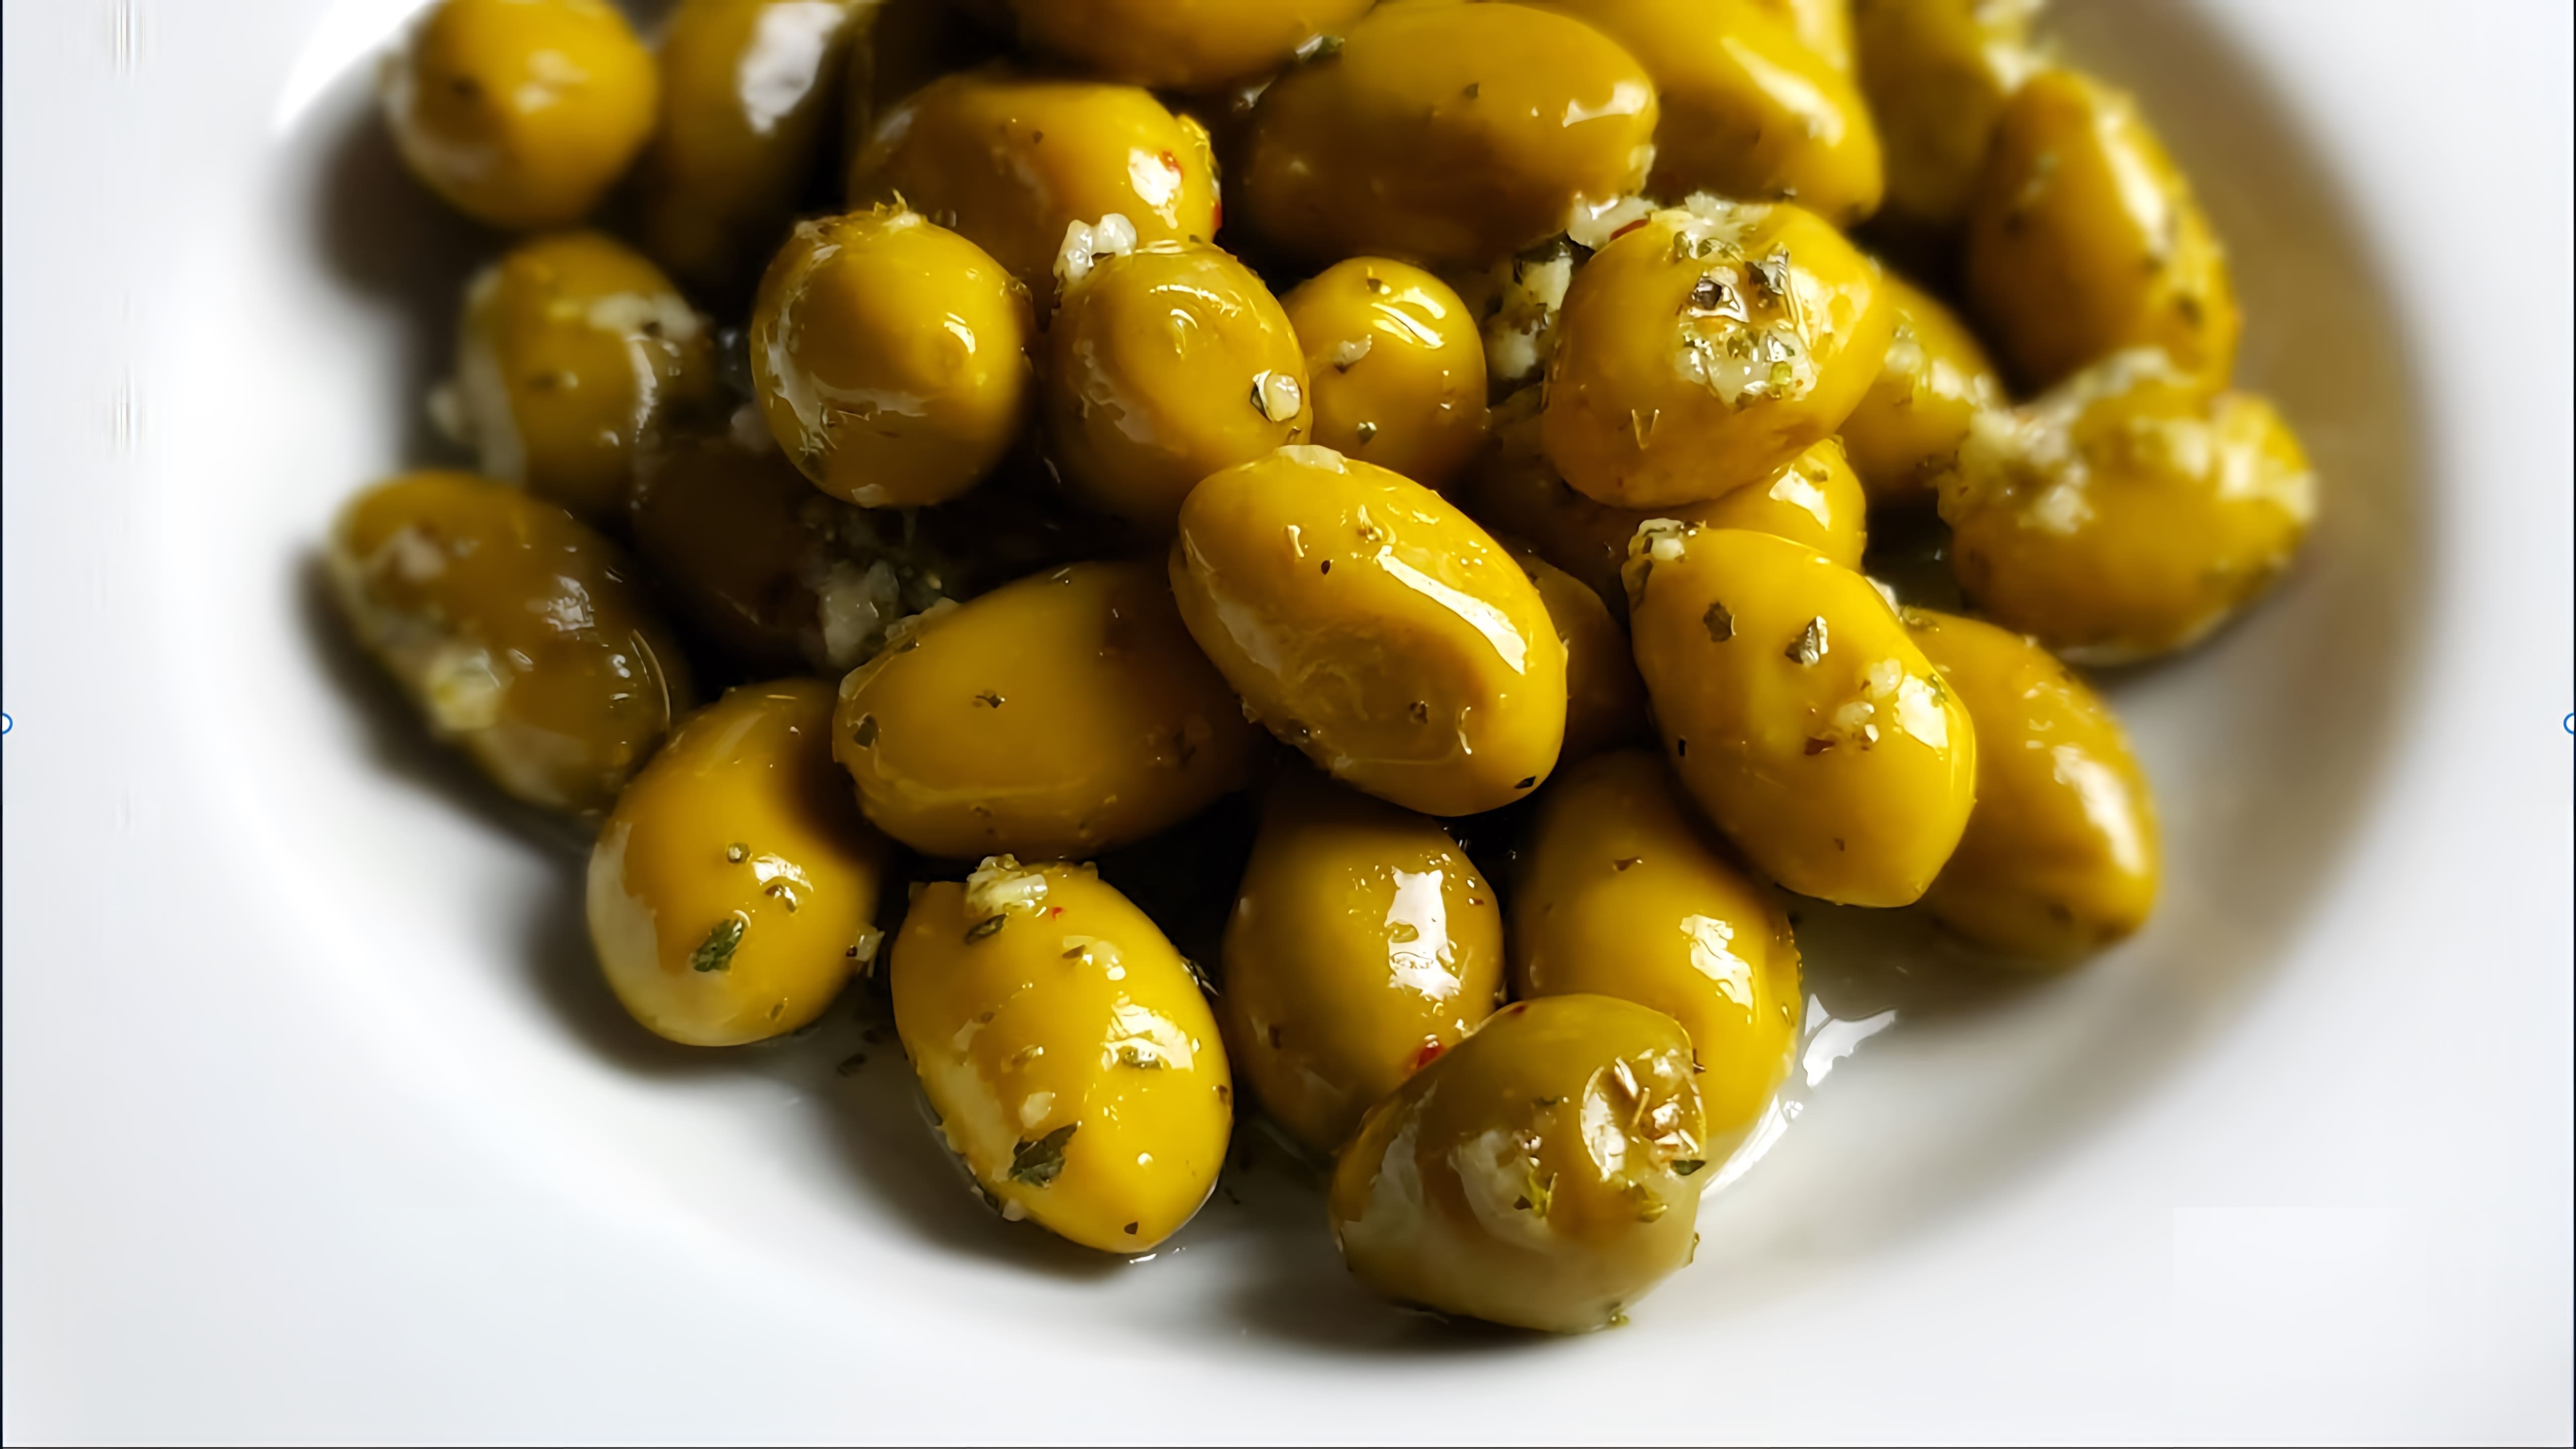 Оливки по-Итальянски - это рецепт, который позволяет приготовить вкусные и ароматные оливки, которые станут отличным дополнением к любому блюду